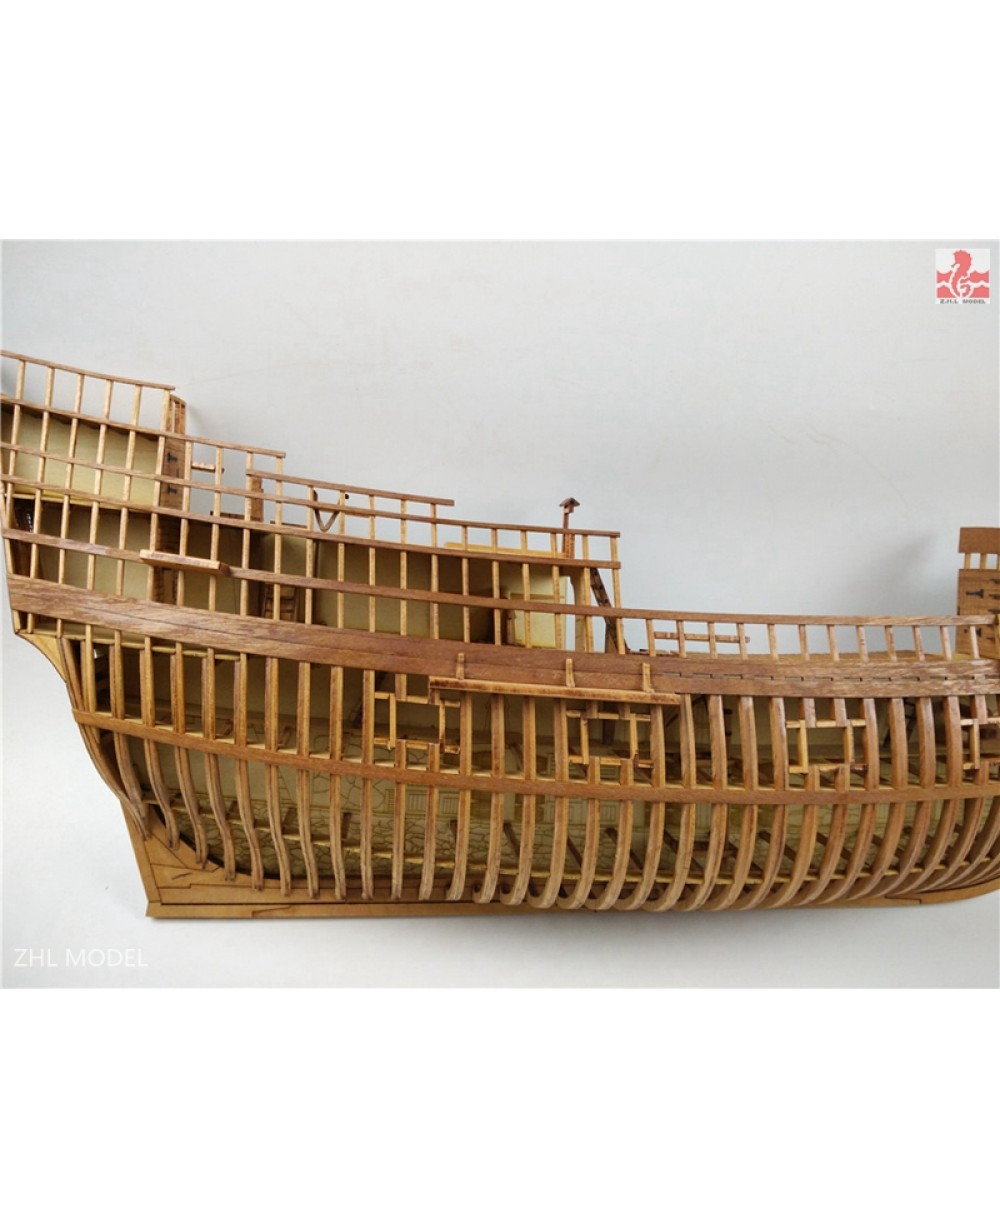 Mayflower Full Rib Cross Section Scale 148 25 Wooden Model Ship Kit